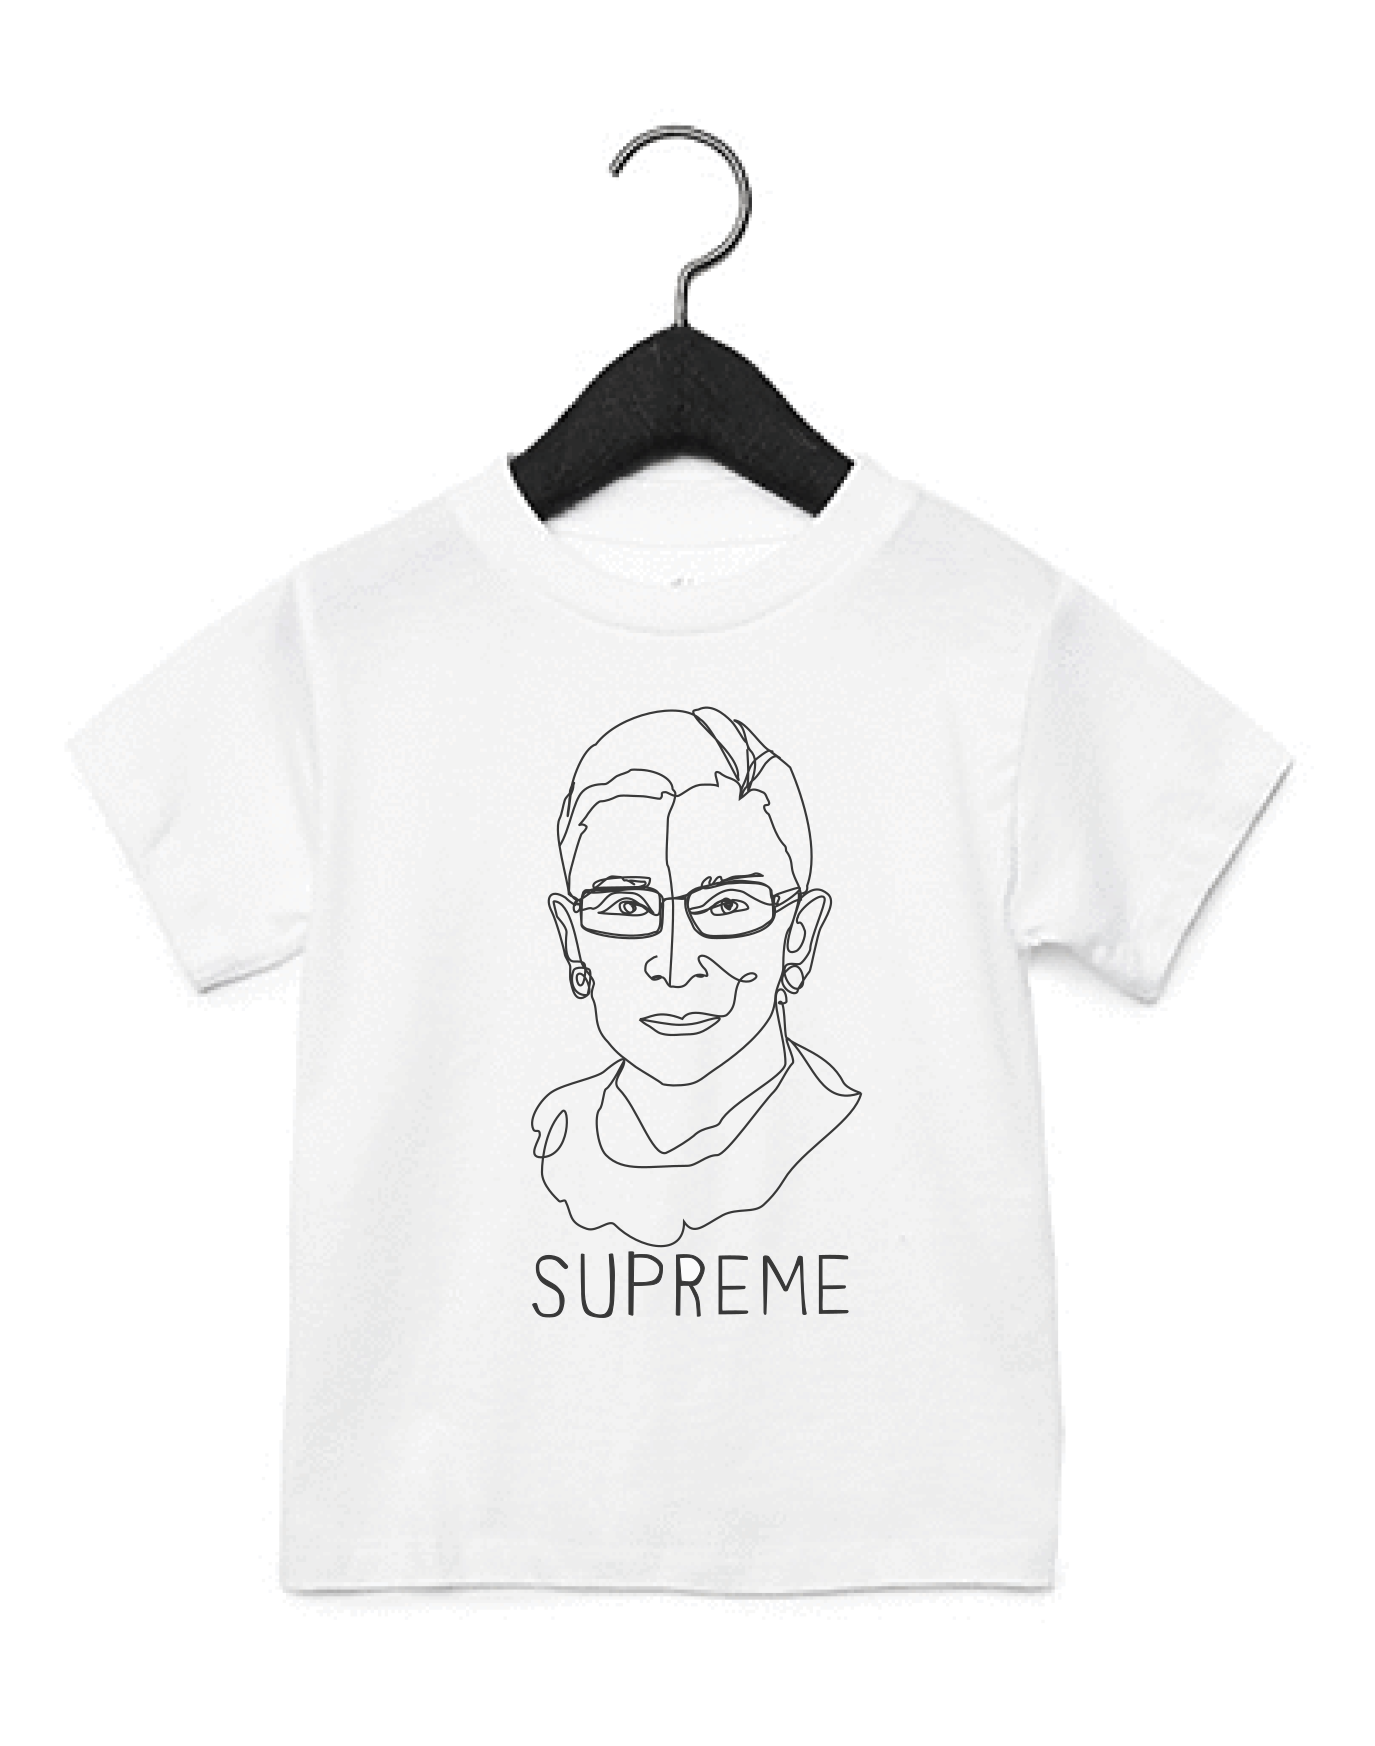 Notorious RBG, Ruth Bader Ginsburg Kids T-Shirt